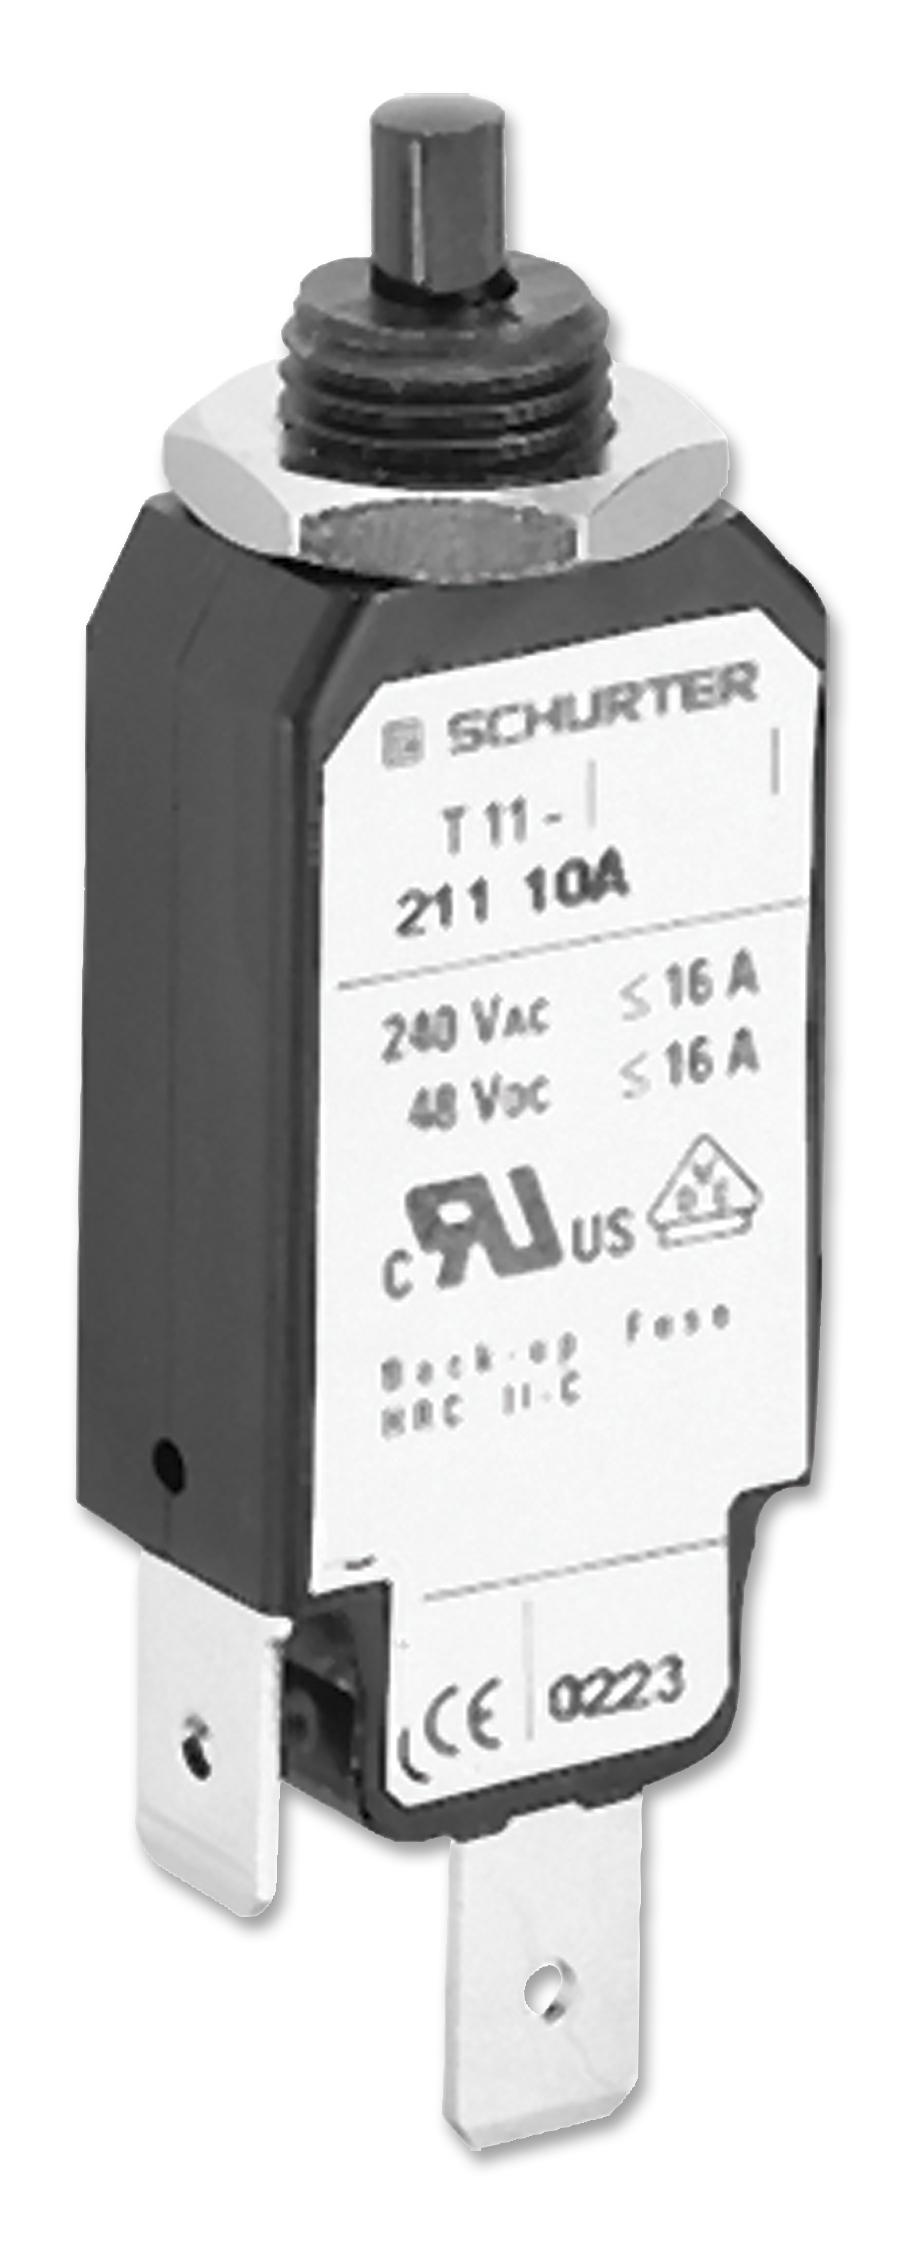 2 4400 1. Выключатель максимального тока Schurter 4400.0017 (t11-211-0.3a. Шуртер 10а автоматический выключатель. Schurter t11-211-0.3a. Schurter t11 211 03a.